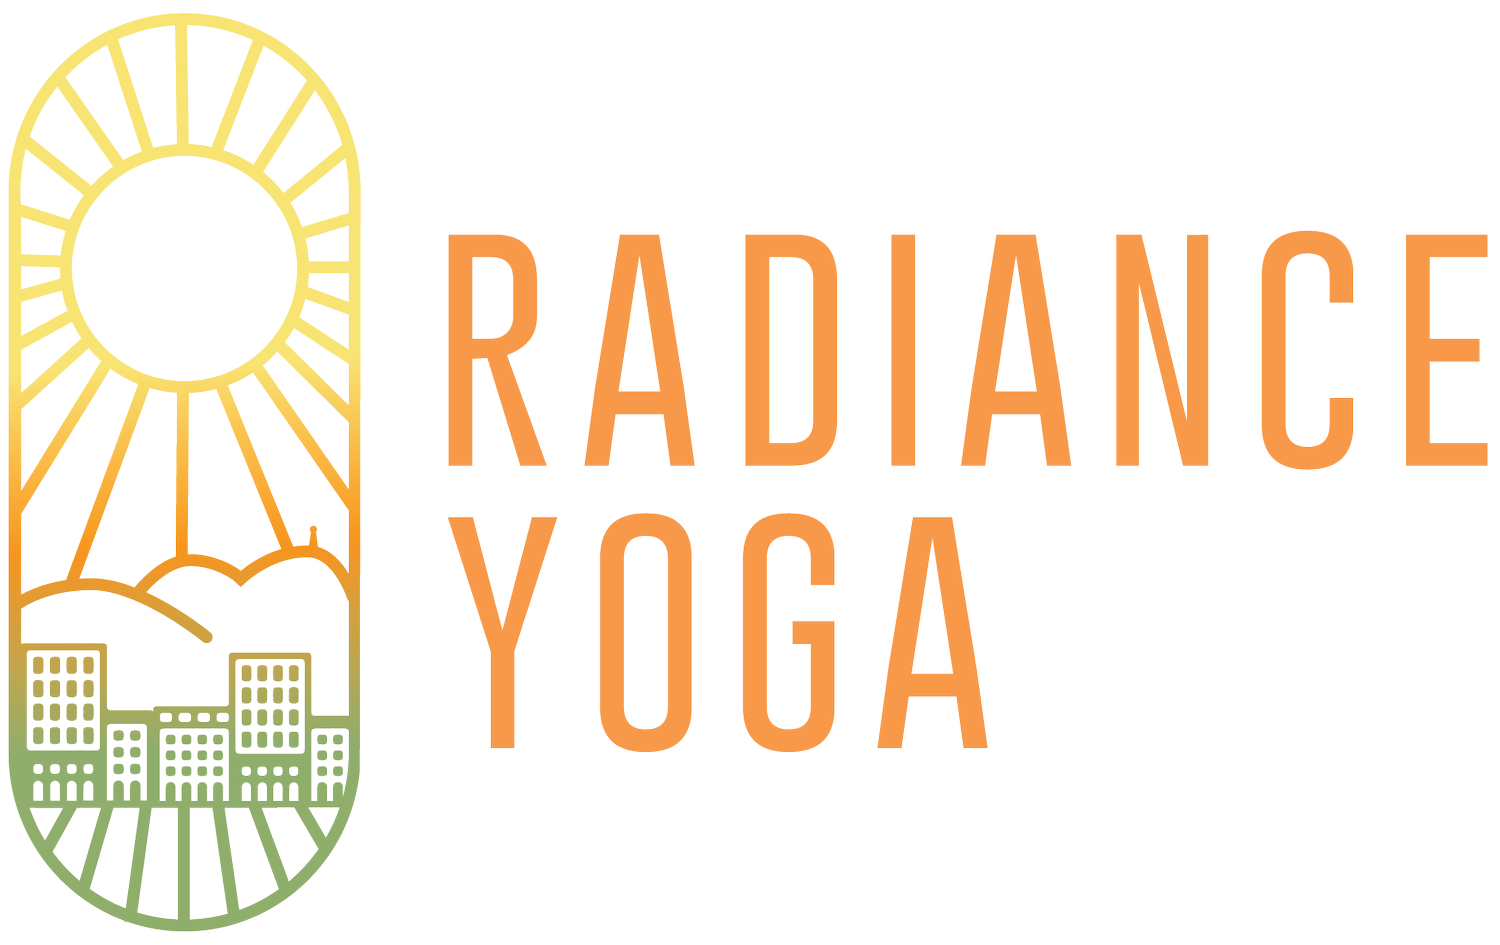 Radiance Yoga